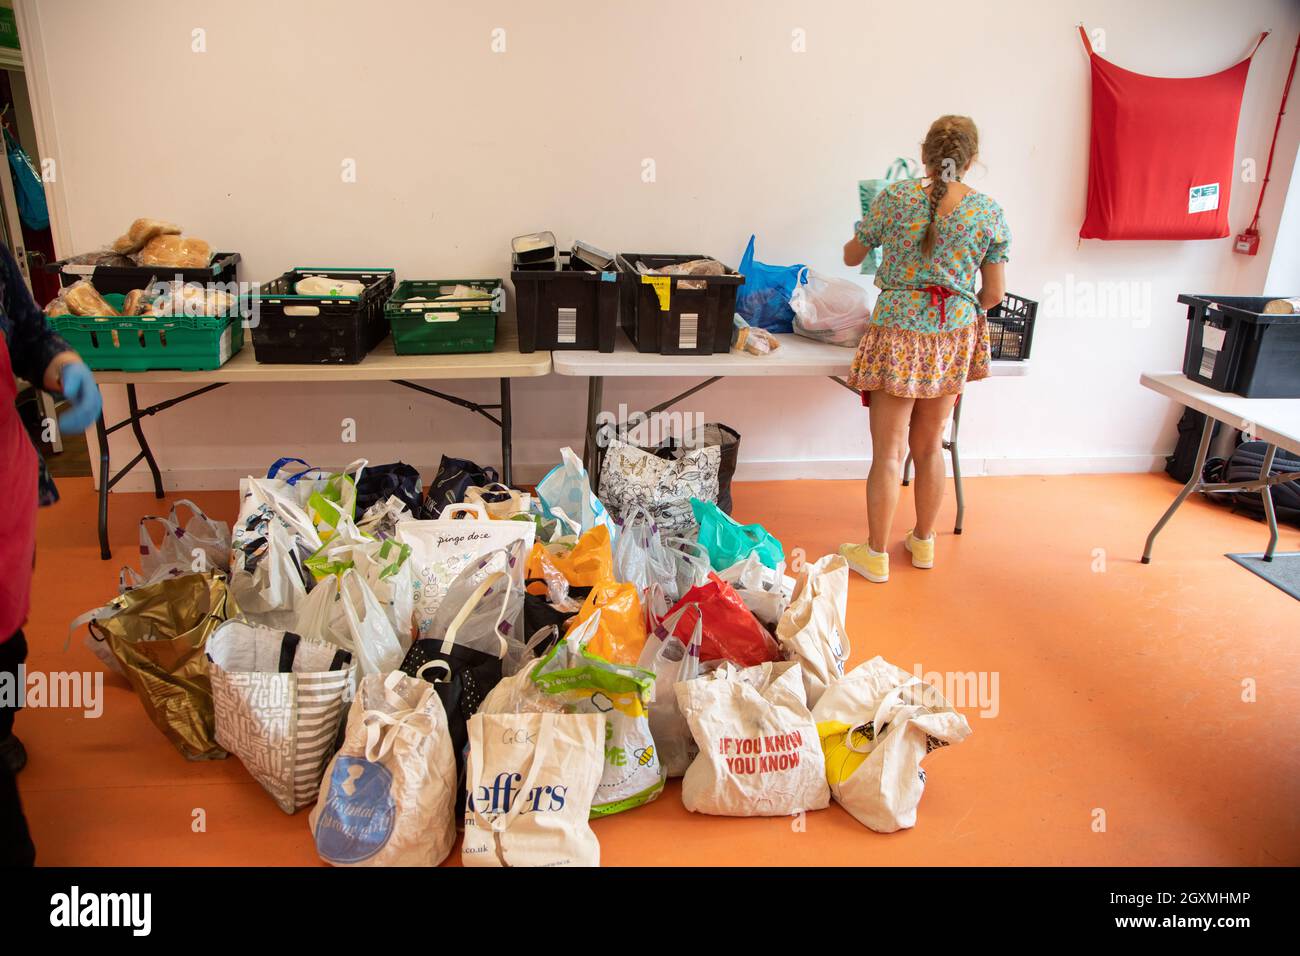 Une femme volontaire dans une banque alimentaire triant des sacs et des caisses de nourriture donnée en vue des distribuer aux membres de la communauté locale dans le besoin. Banque D'Images